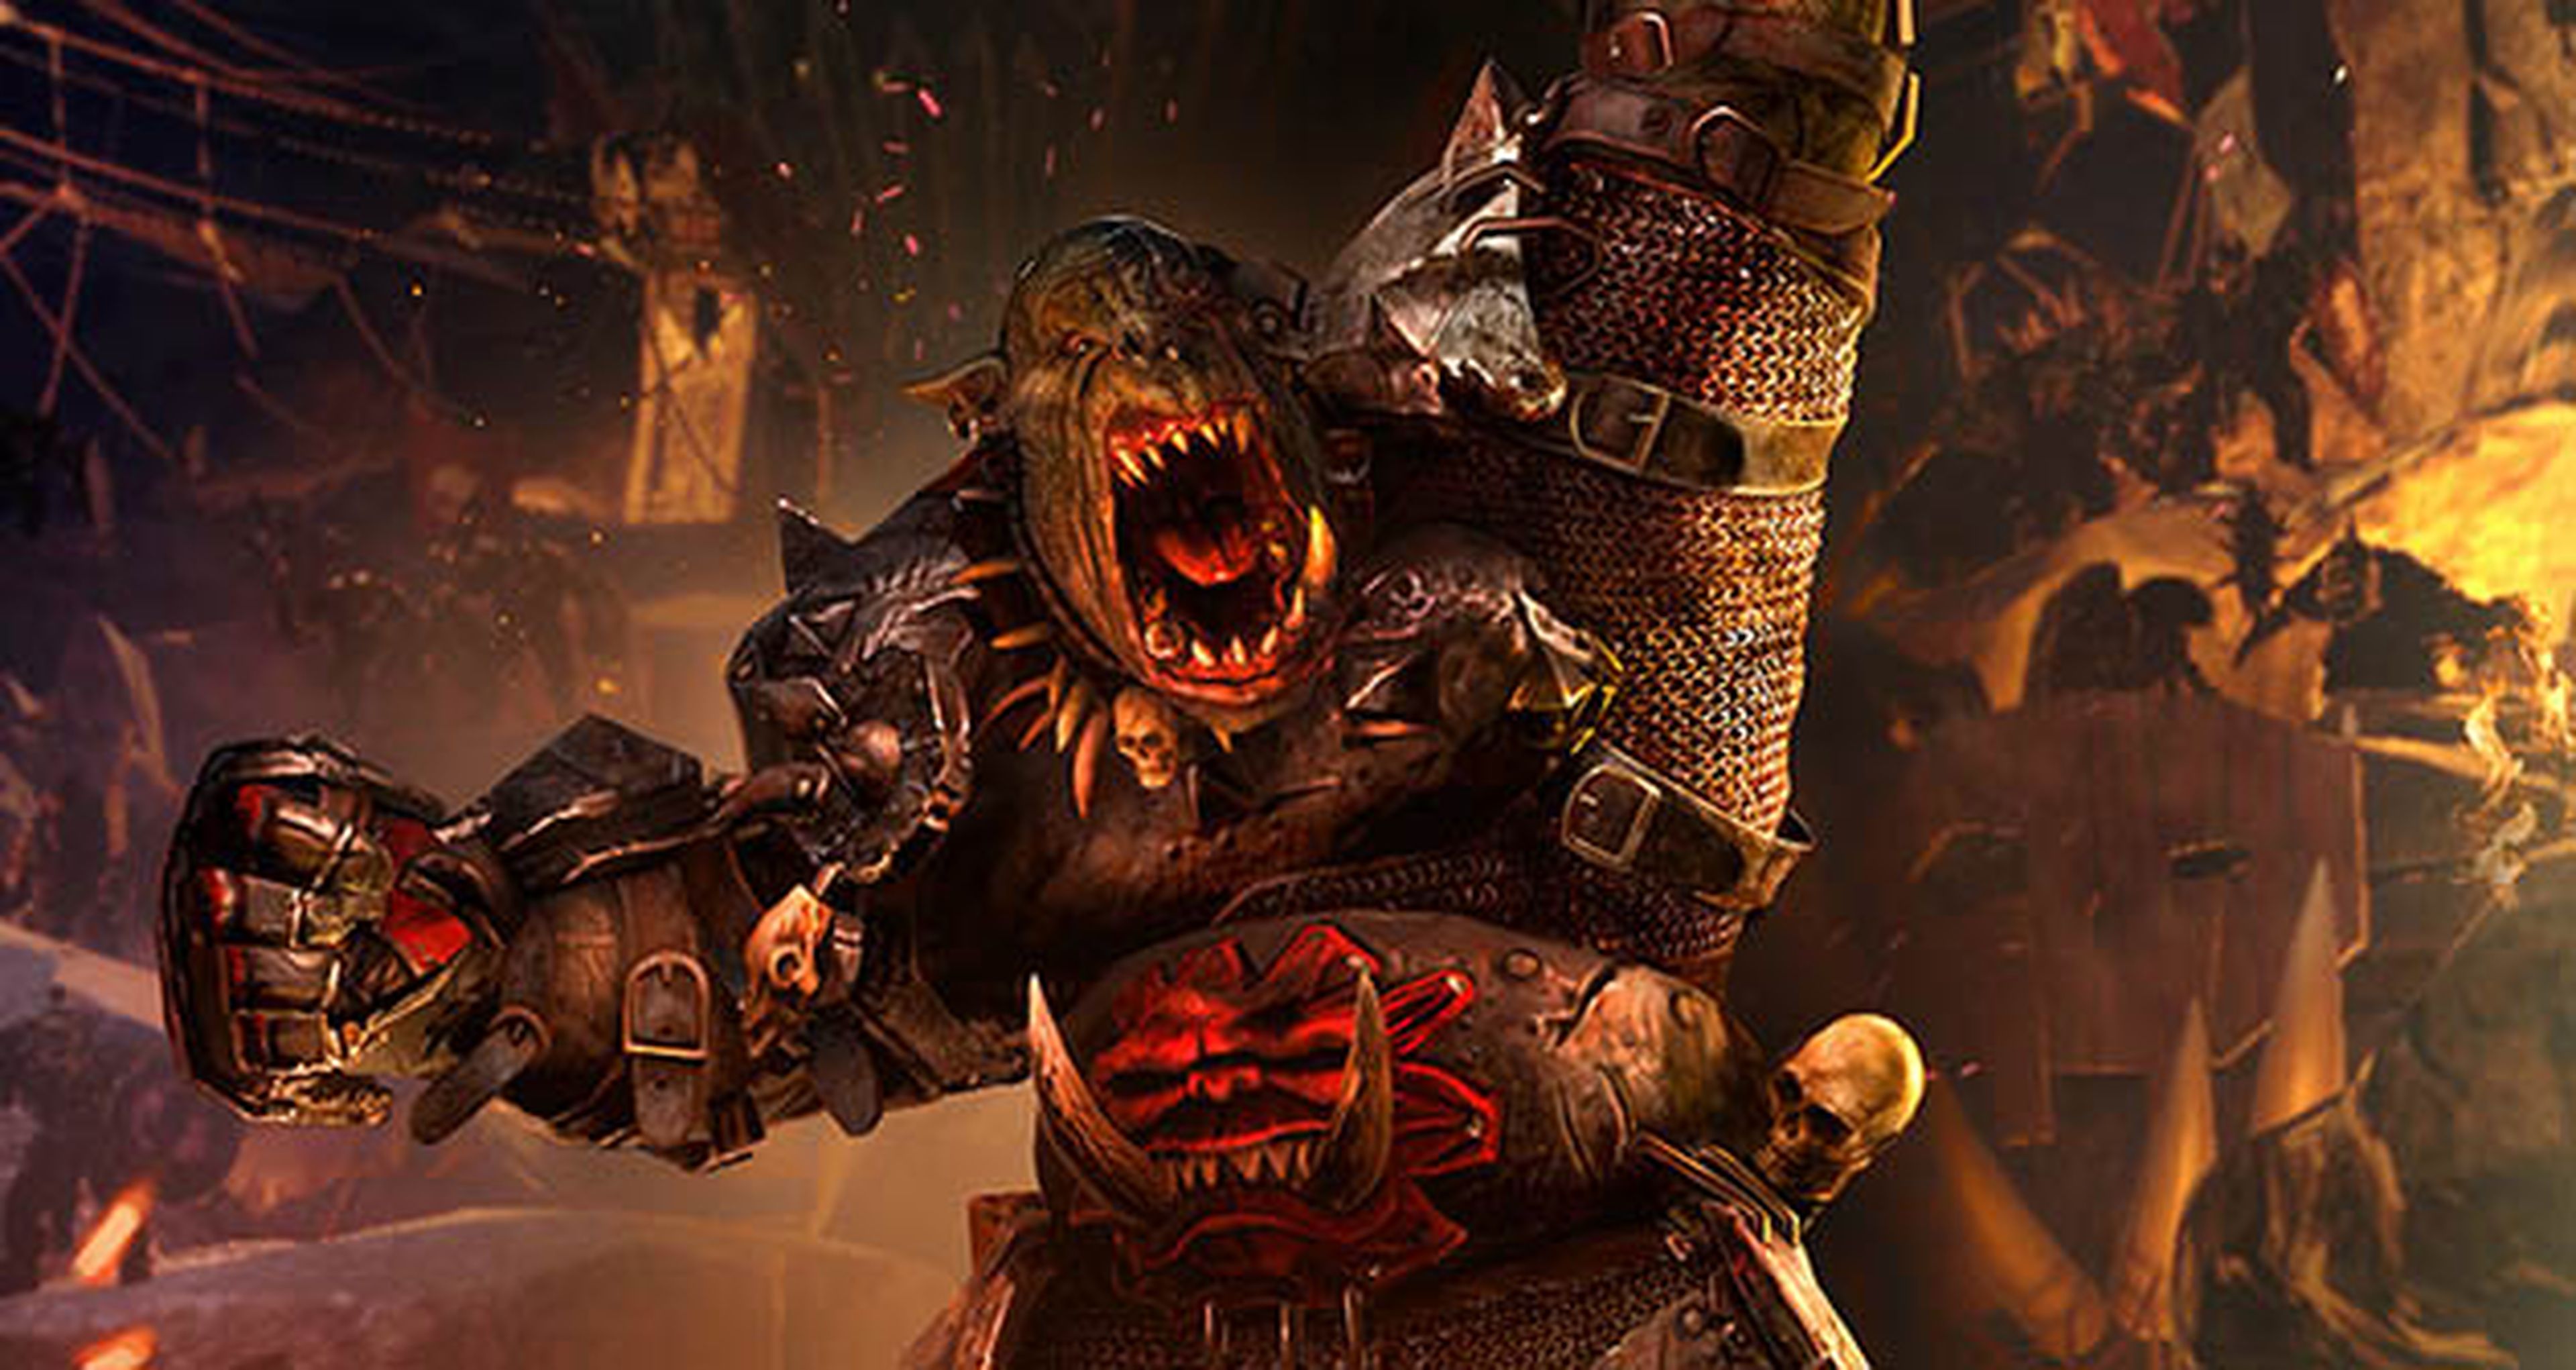 Avance de Total War Warhammer para PC